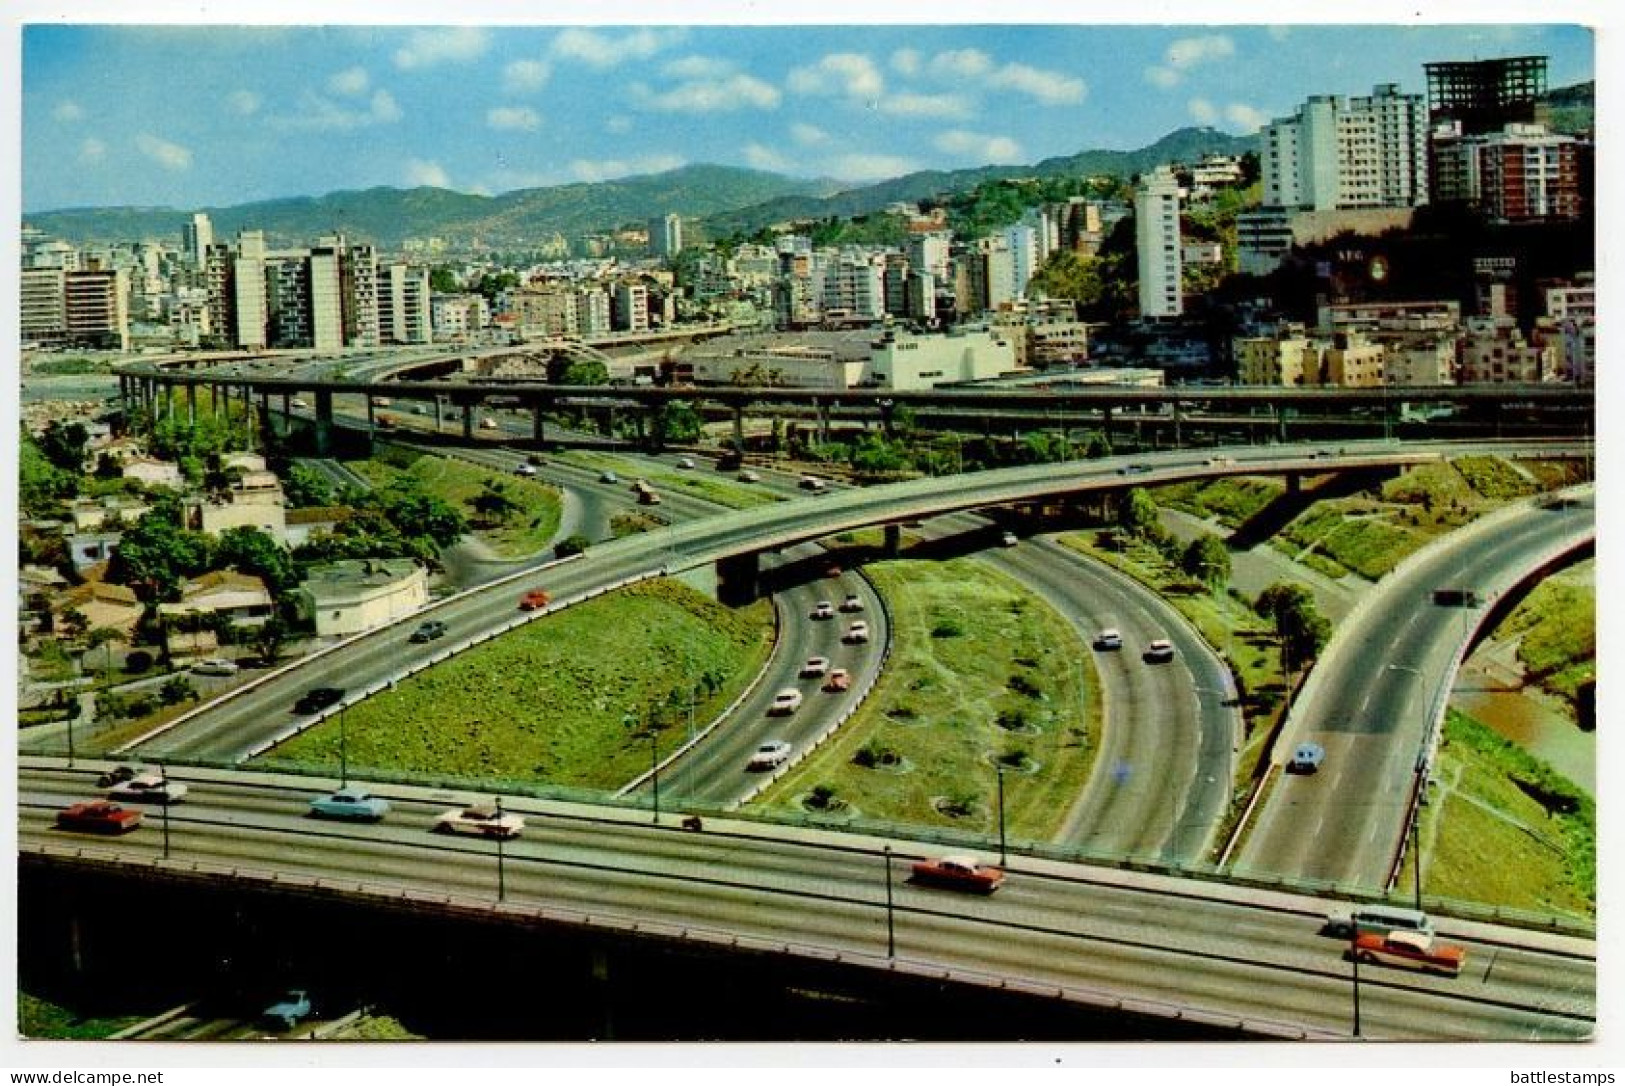 Venezuela 1969 Postcard Caracas - El Pulpo / Highway; 45c Church San Francisco De Vare & 15c Electric Substation Stamps - Venezuela